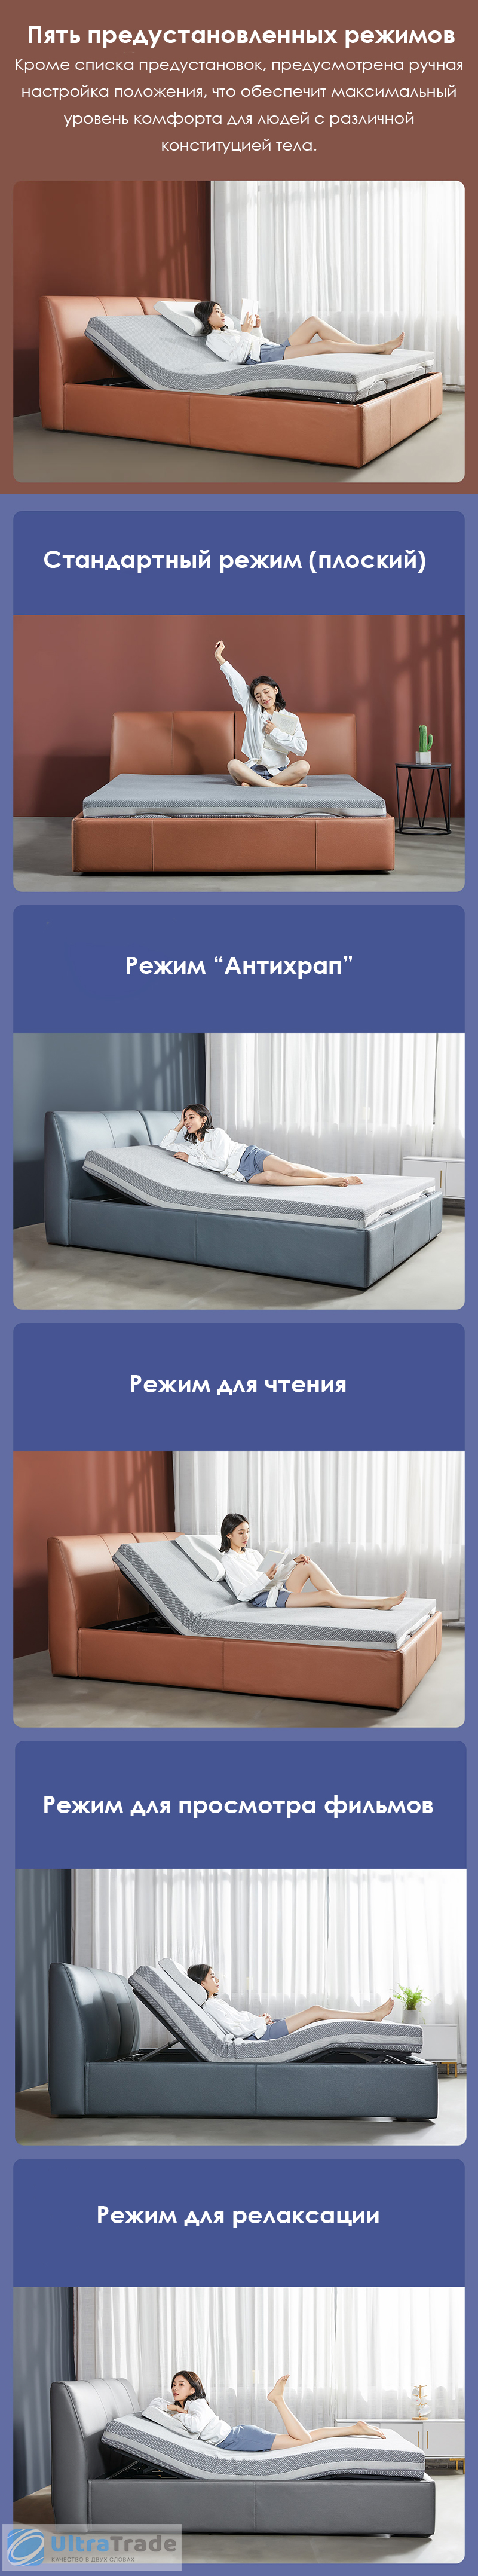 Двуспальная кровать Xiaomi 8h Smart Electric Bed DT1 1.5 m Ash (умное основание и ортопедический матрас R2 Pro)